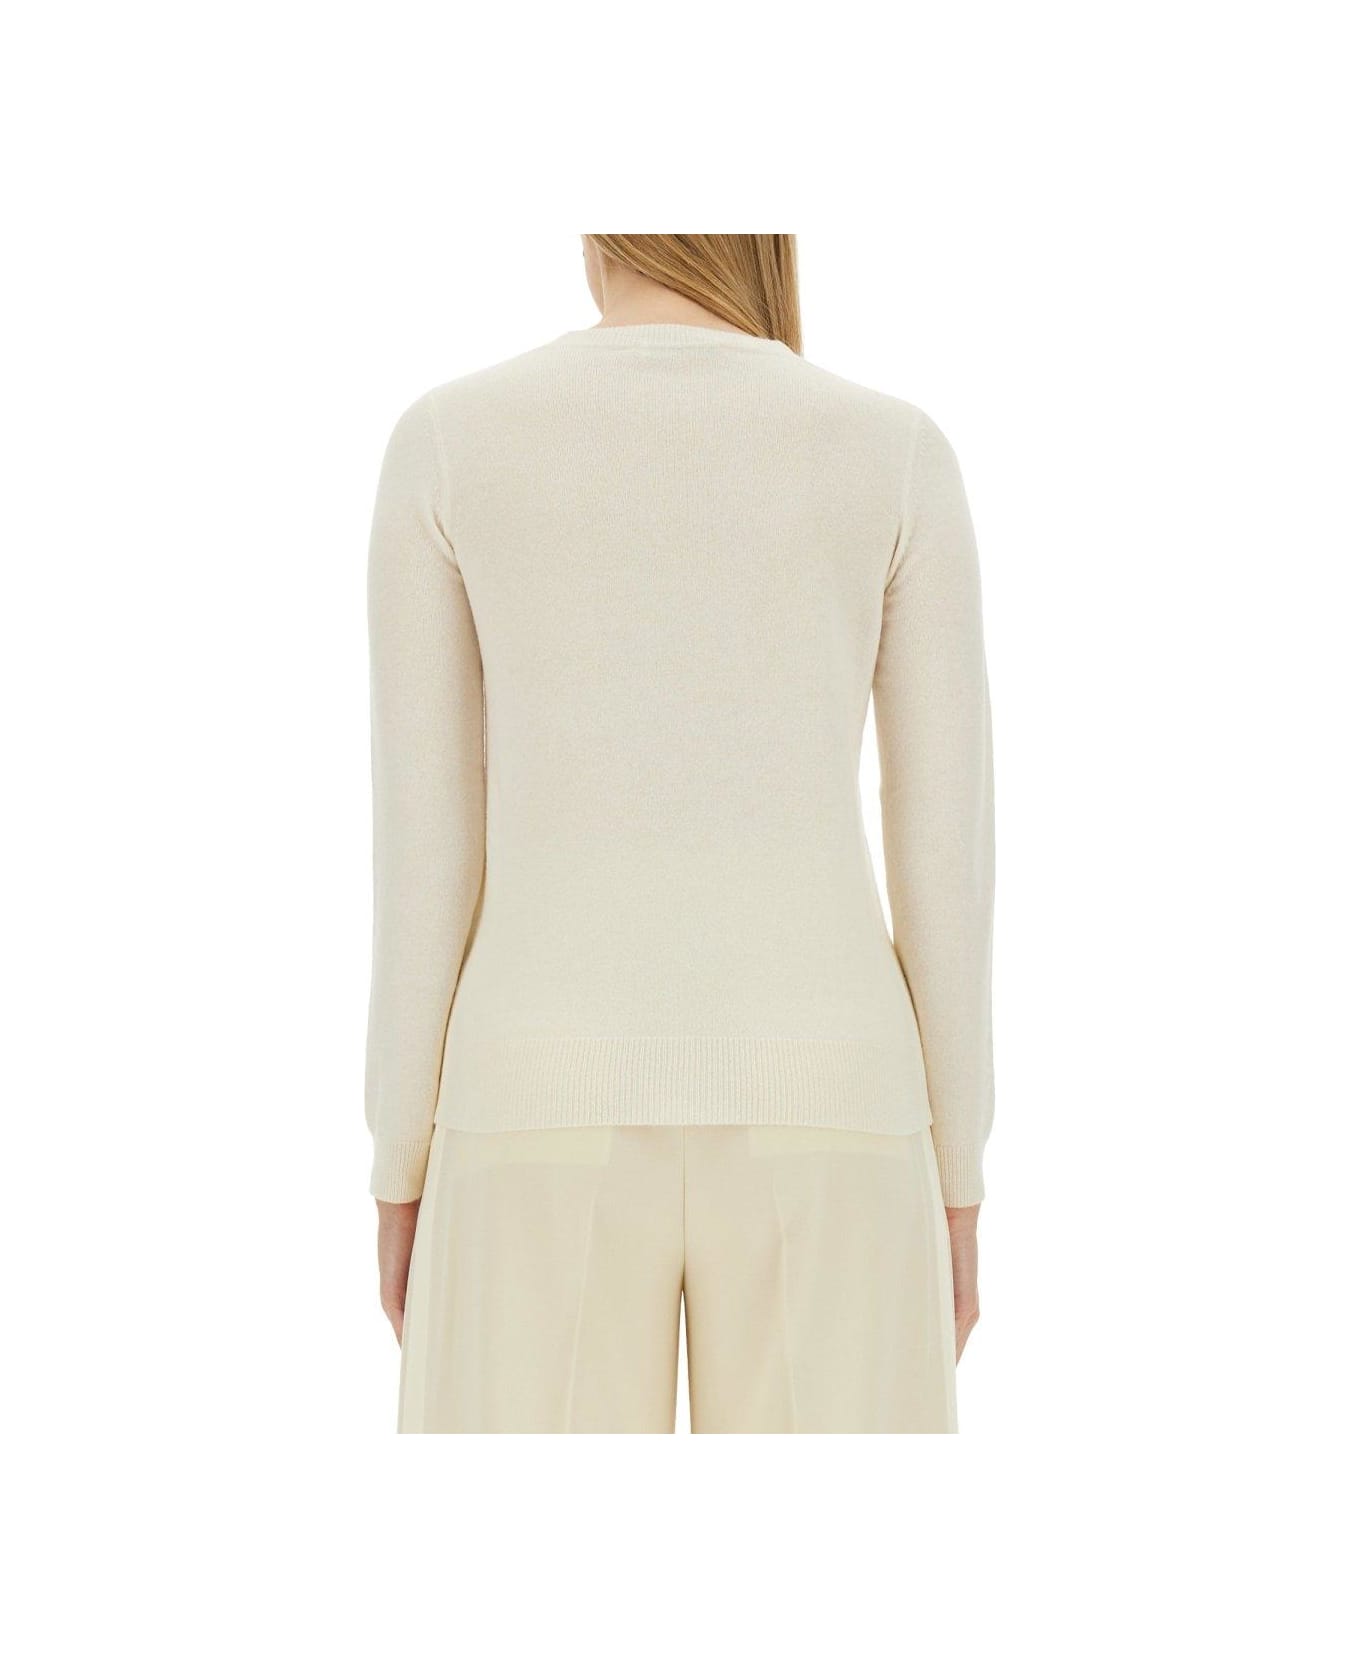 Max Mara Bari Wool And Cashmere Sweater - WHITE ニットウェア